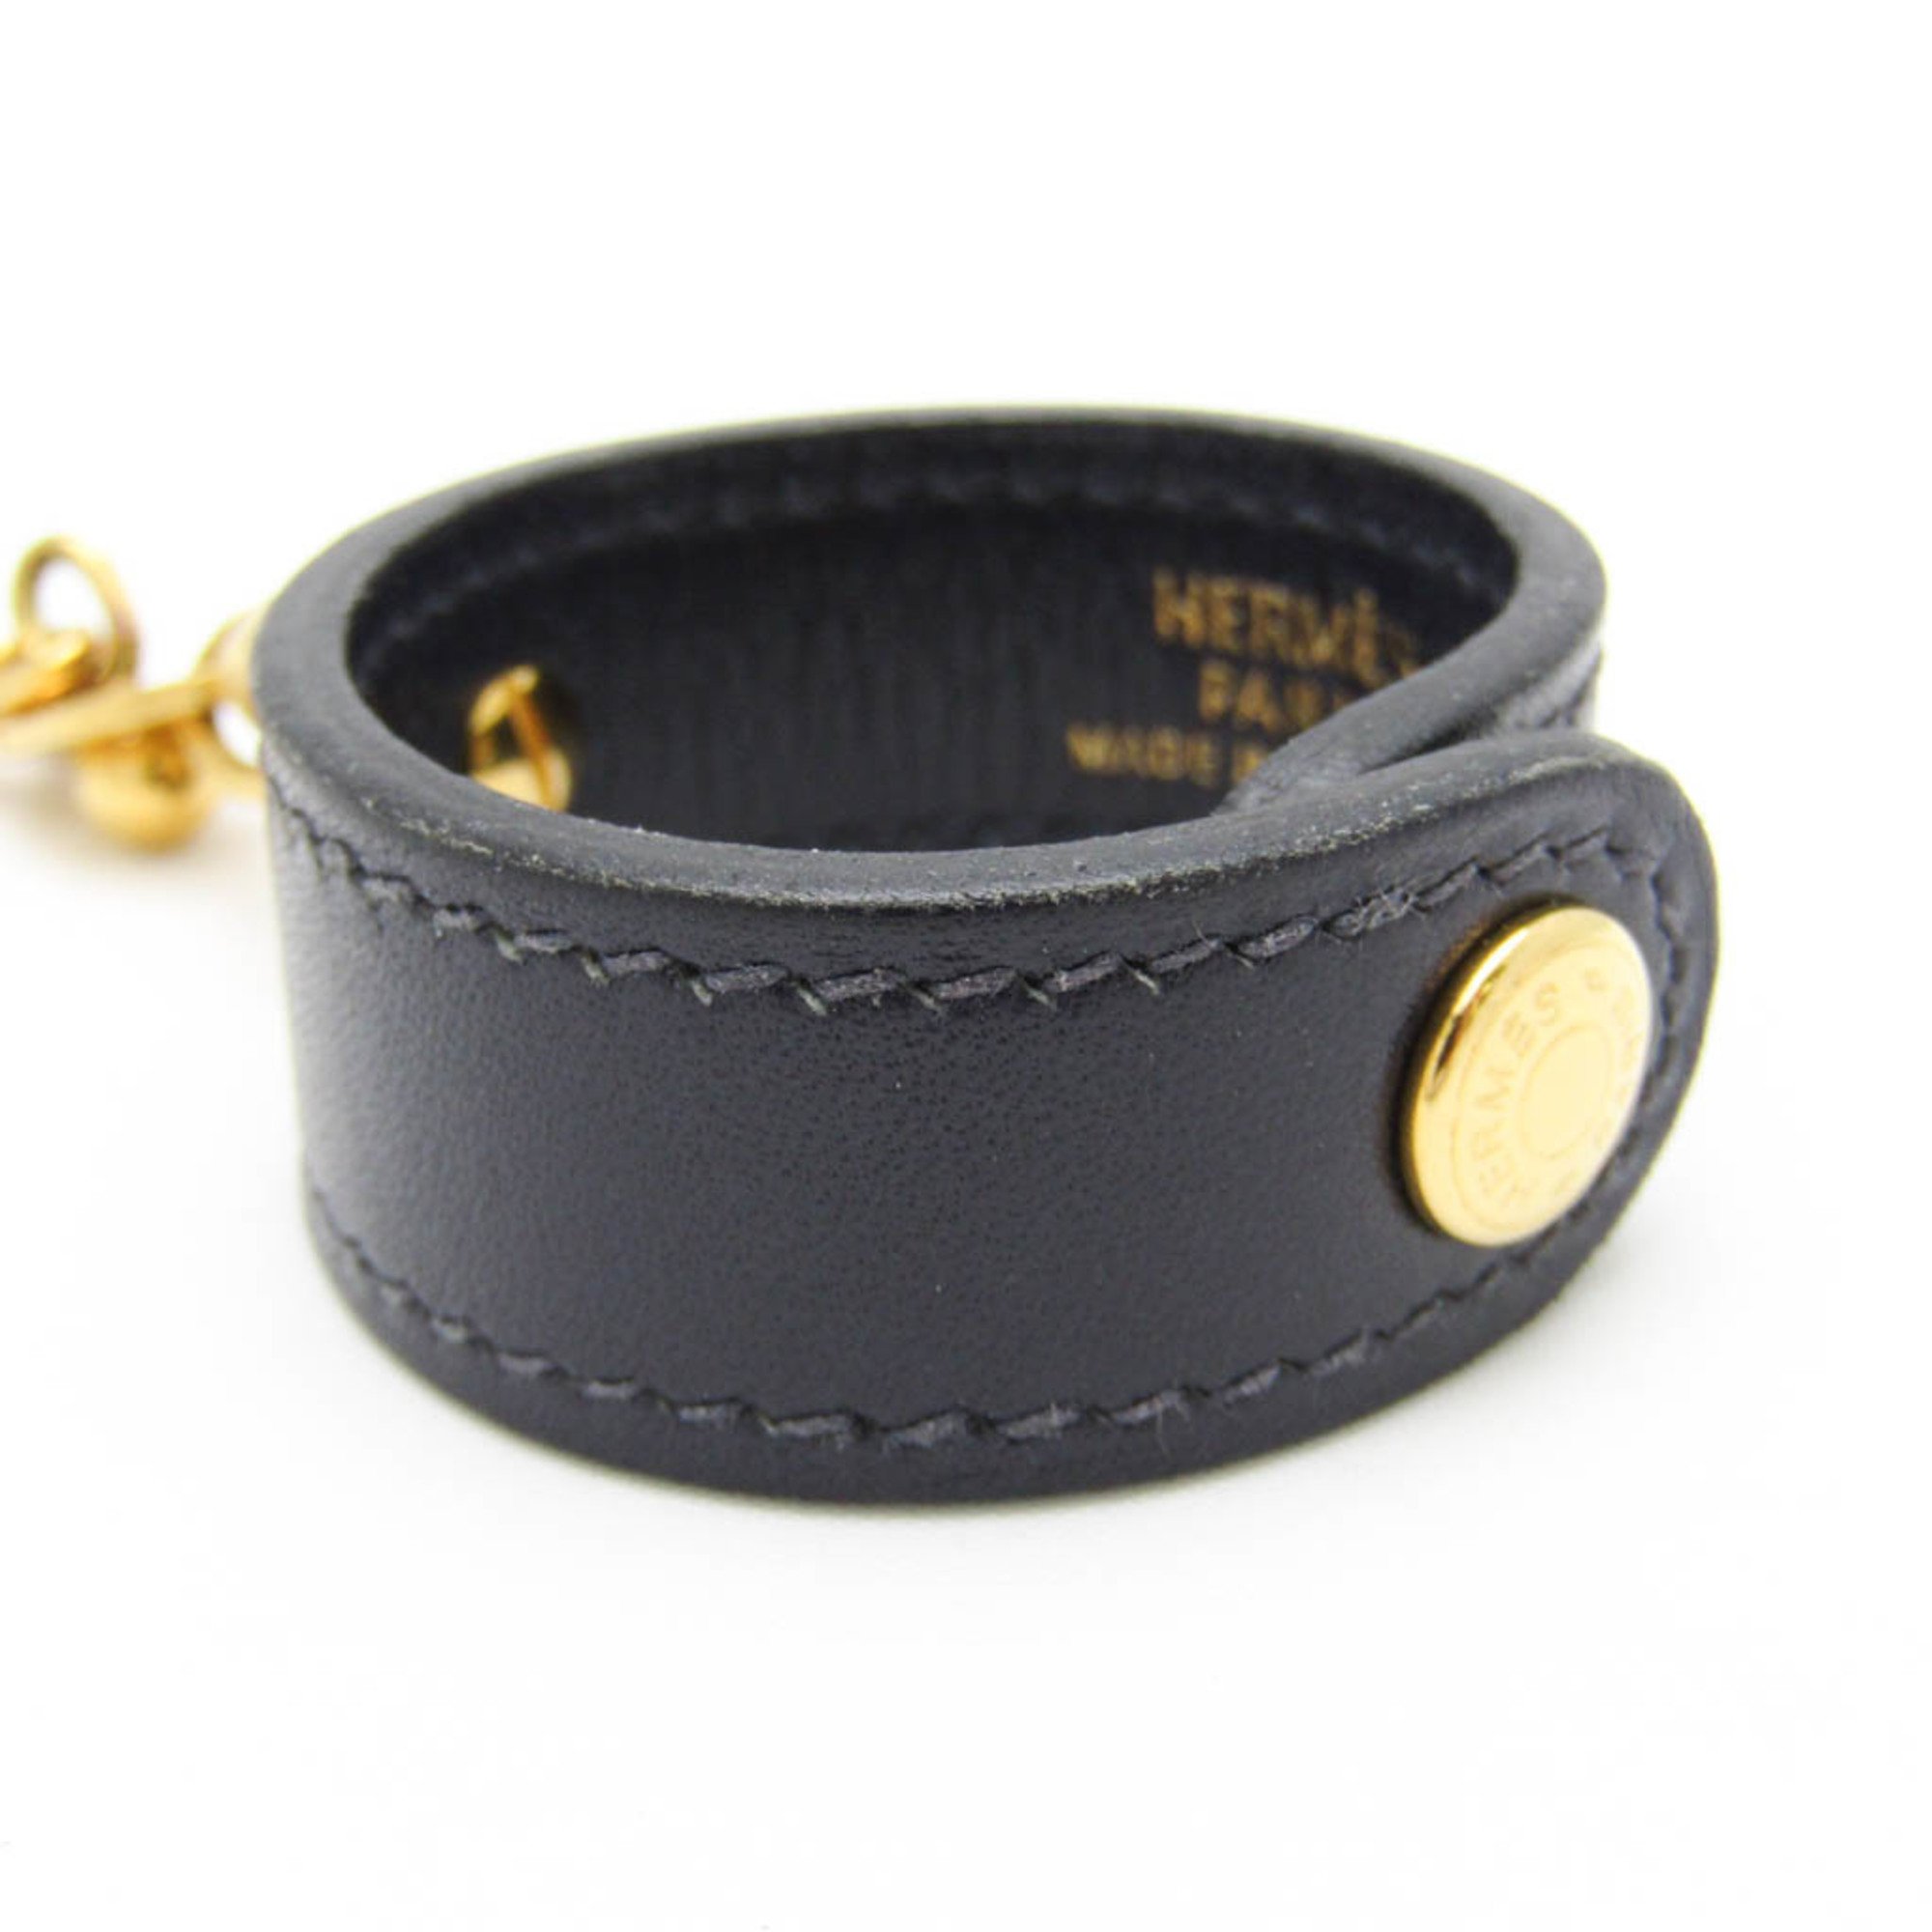 Hermes Glove Holder Keyring (Black,Gold)